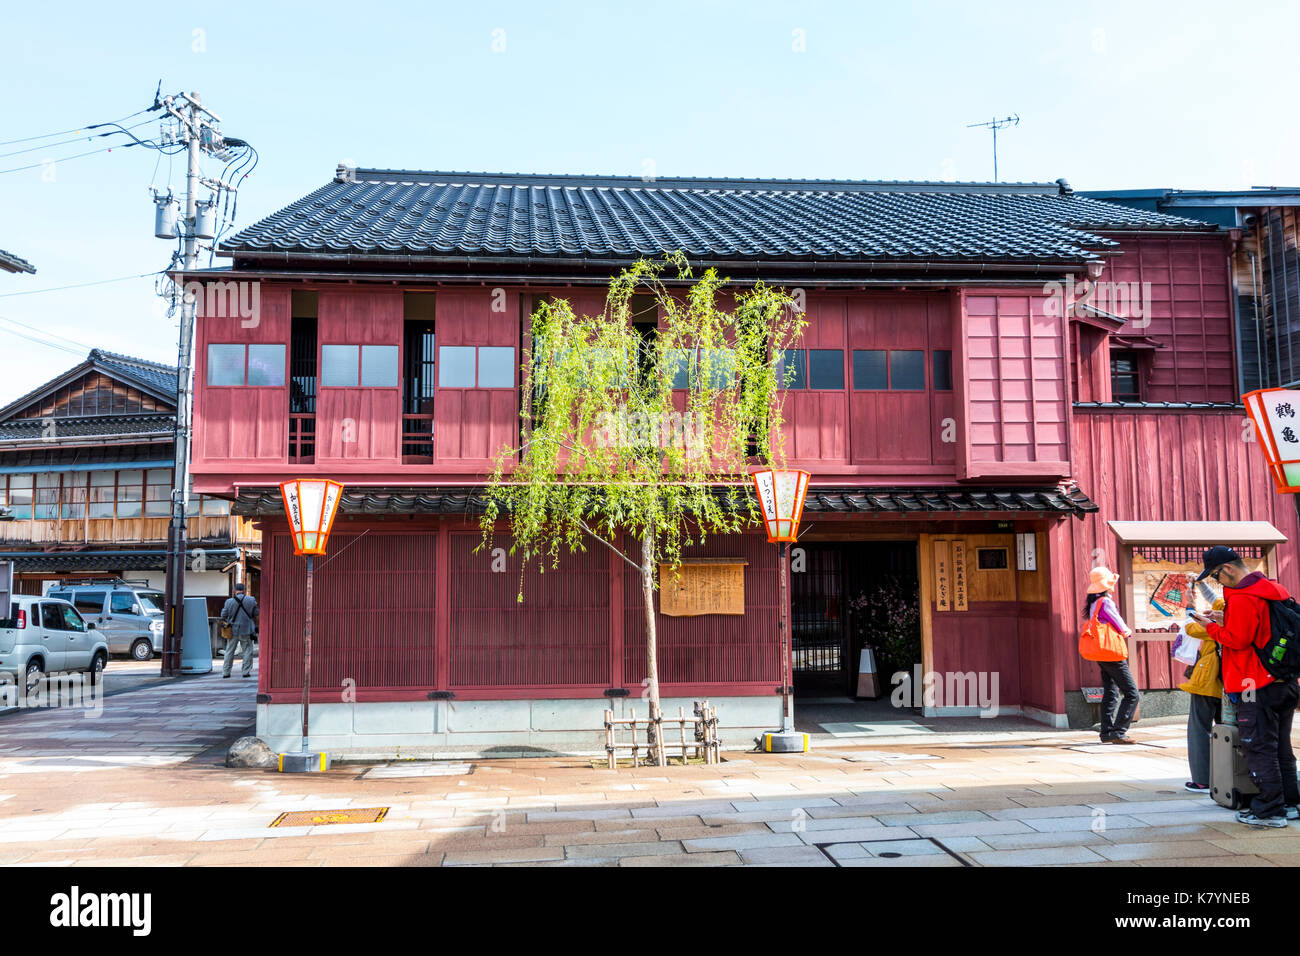 Le Japon, Kanazawa, Higashi Chaya. Période Edo, attraction touristique de deux étages en bois traditionnel merchant house, peint violet, petit saule à l'extérieur. Banque D'Images